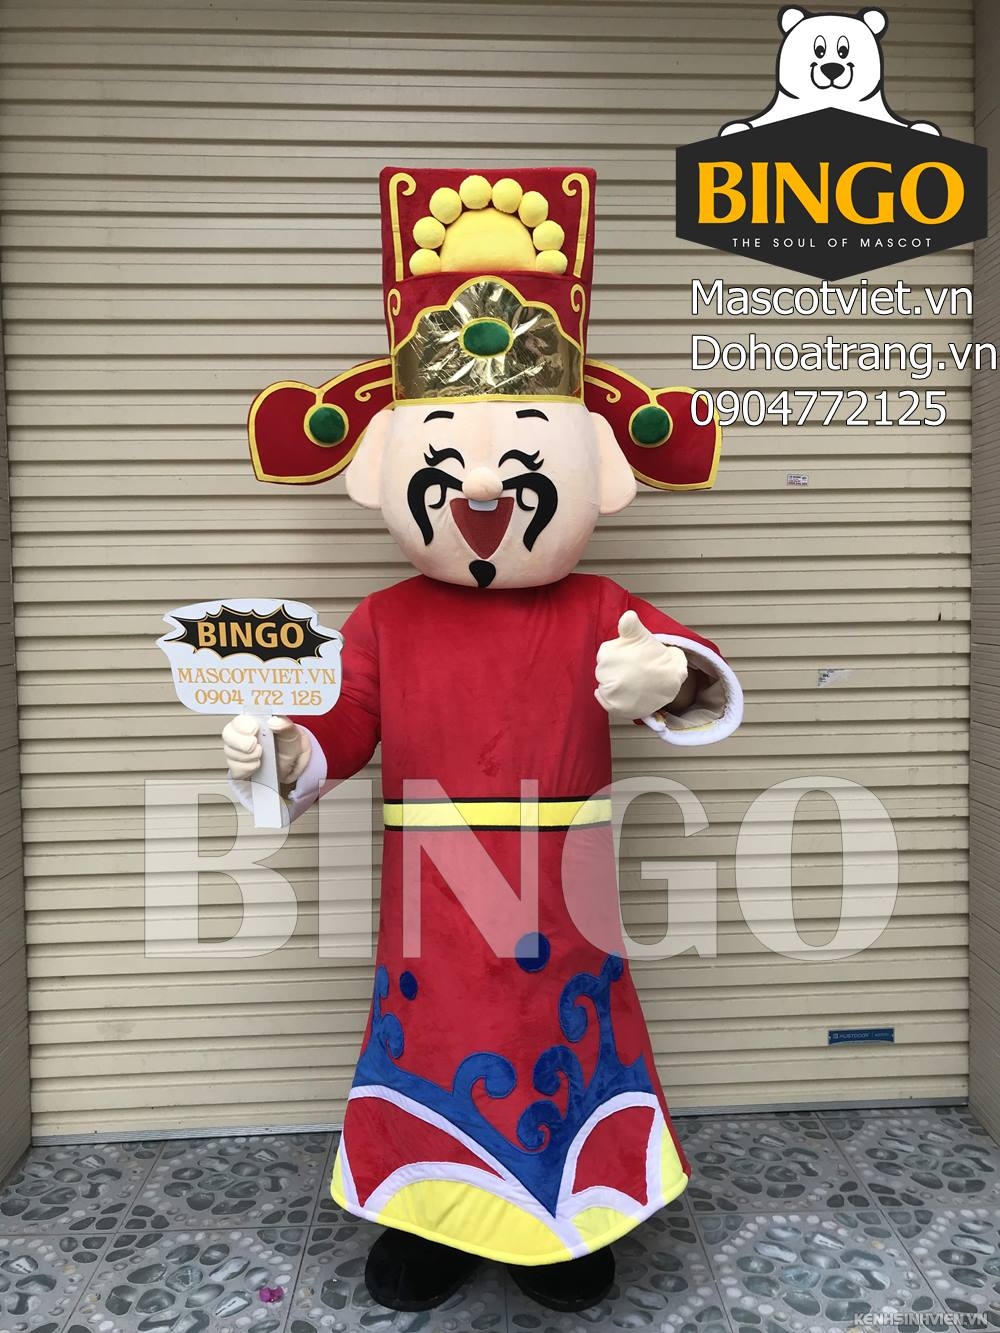 mascot-than-tai-06-bingo-costumes-0904772125.jpg